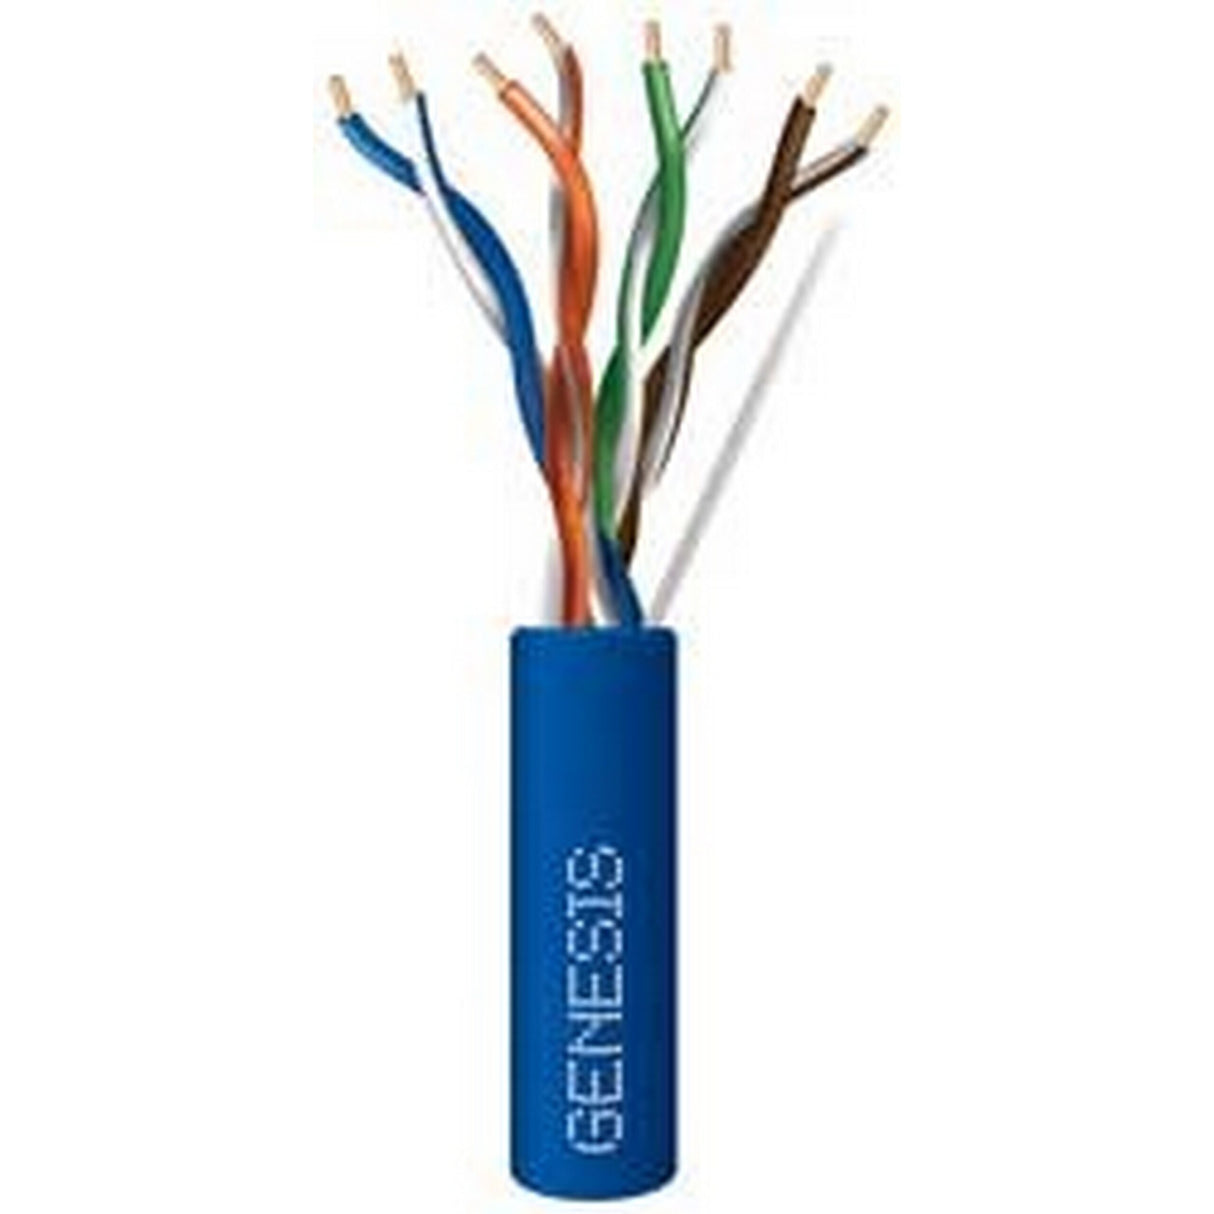 Genesis Cat 5e 24G Riser Cable 1000 Foot Box, Blue